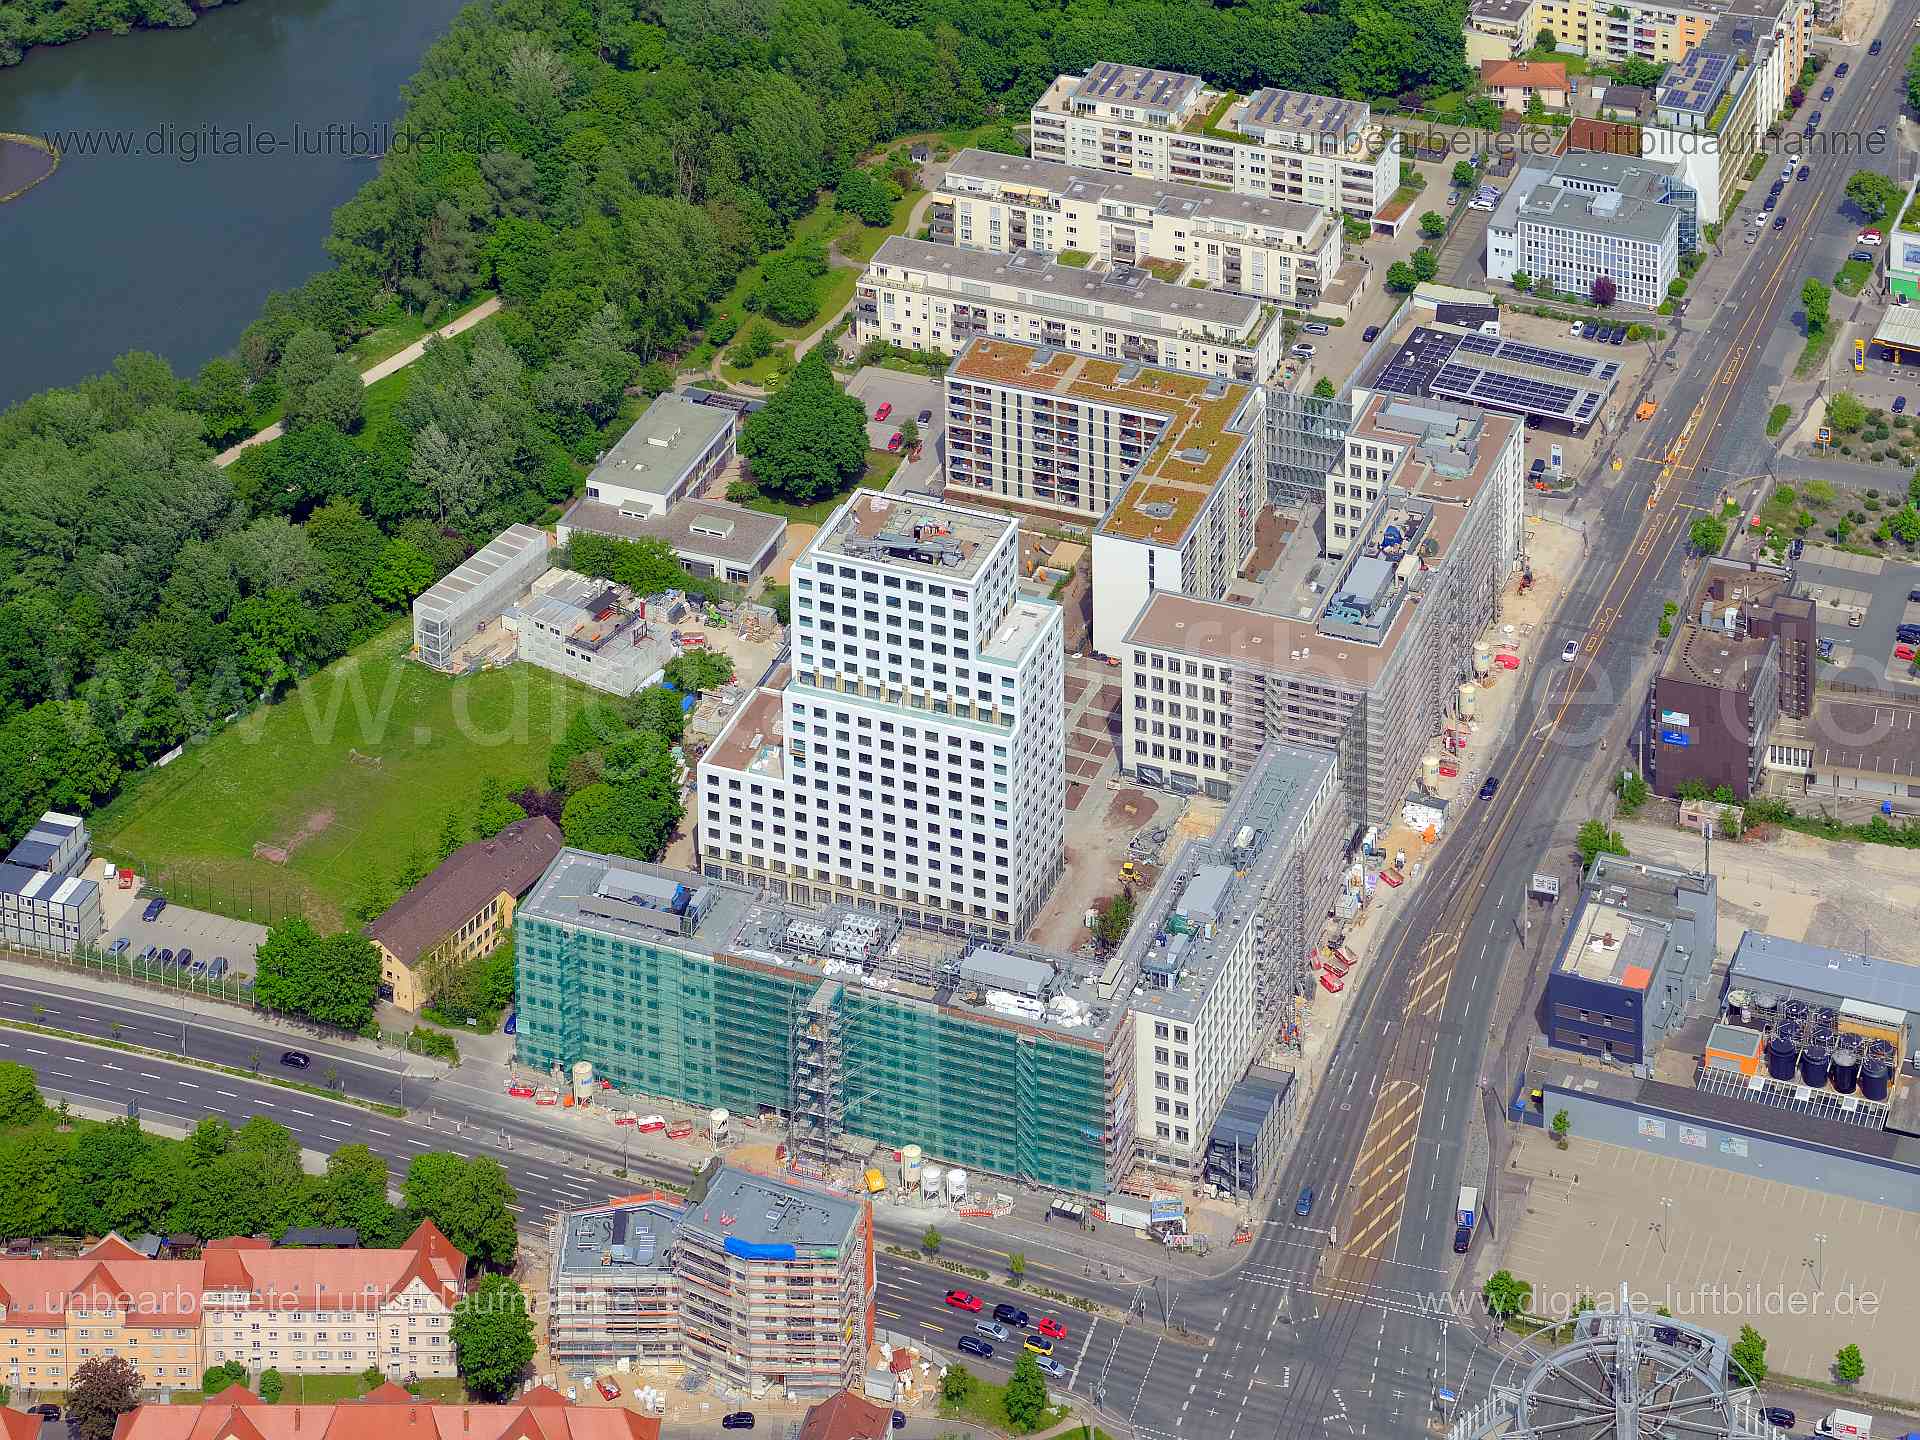 Luftbild - Seetor City Campus, Ort: Nürnberg, Tags: Seetor City Campus, Sontowski & Partner, Wöhrder See, Neubau, Hochhaus...